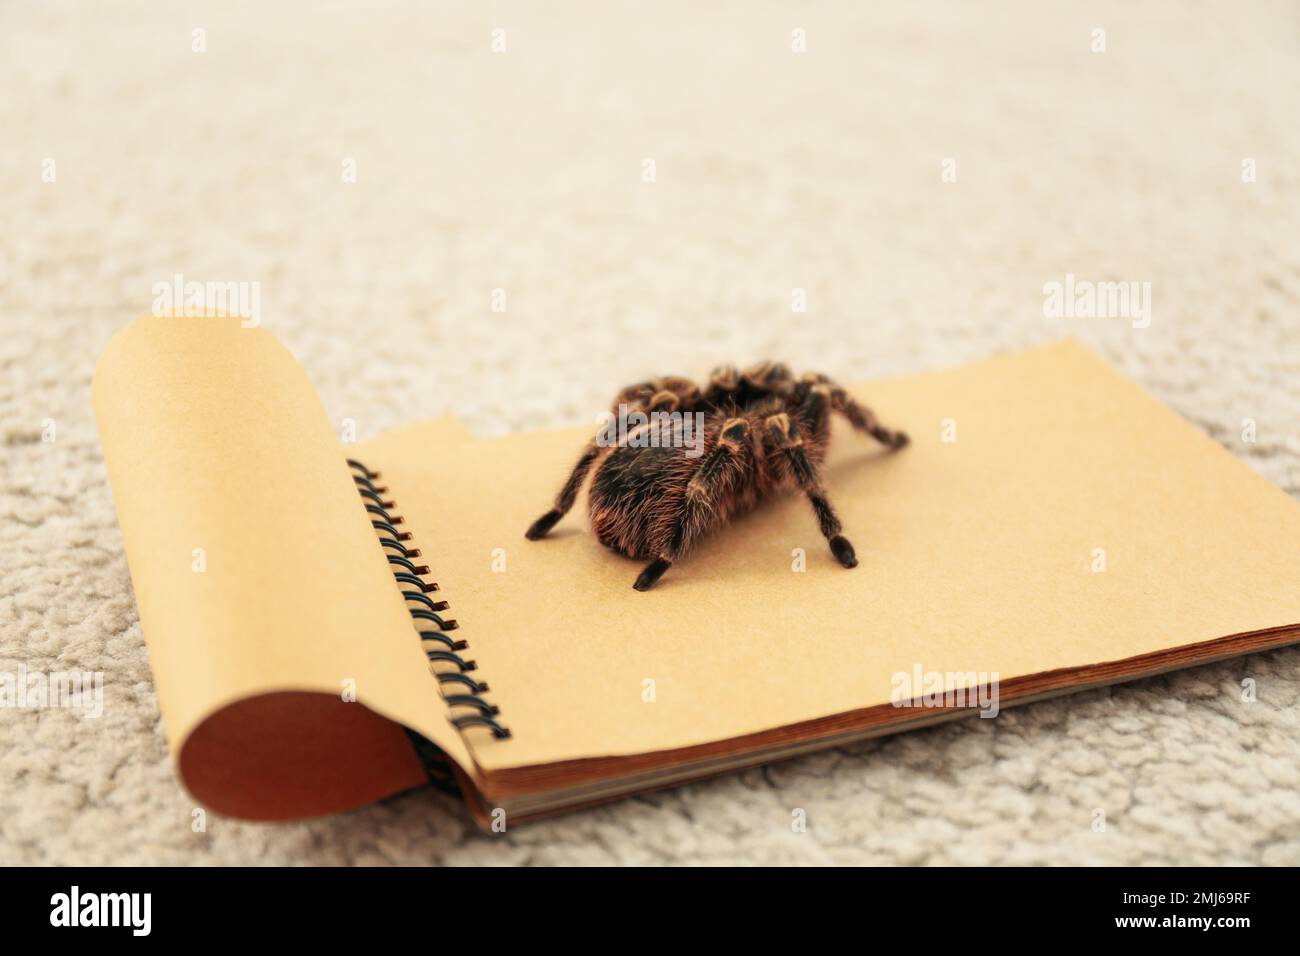 Striped knee tarantula (Aphonopelma seemanni) on notebook indoors Stock Photo